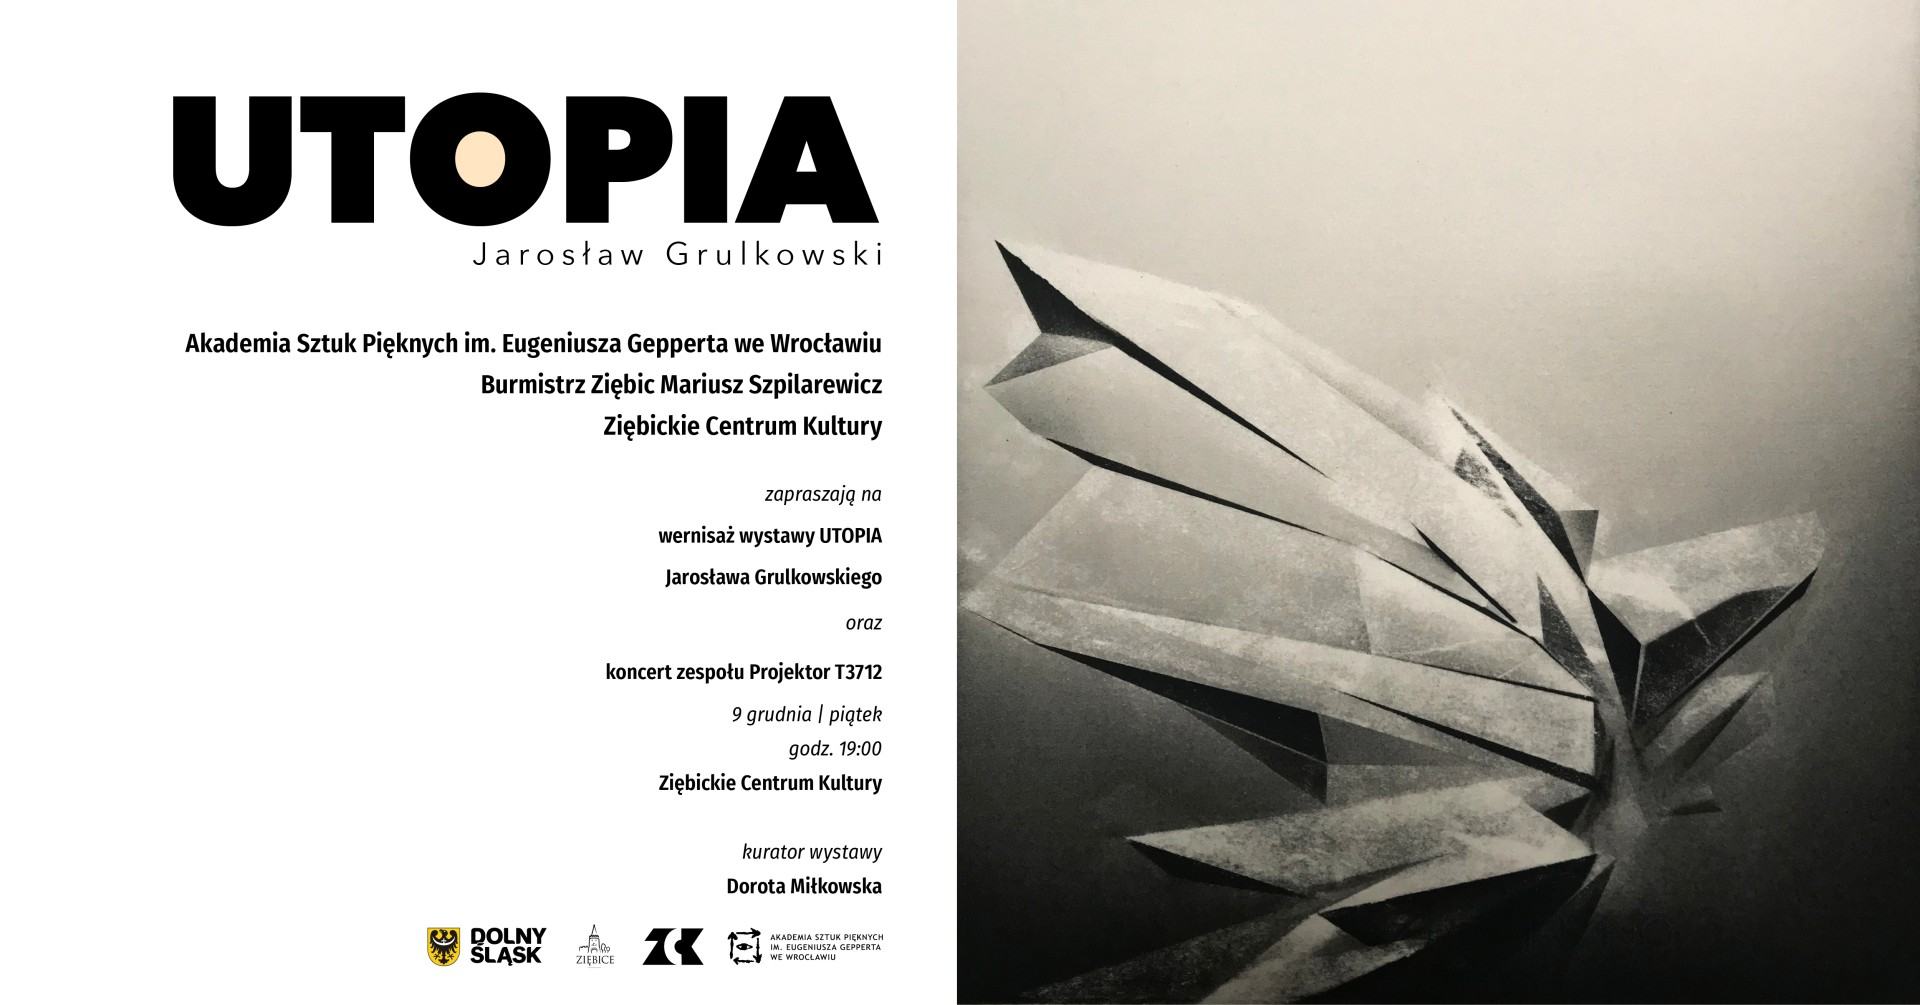 Grafika promująca wystawę - Jarosław Grulkowski, Utopia